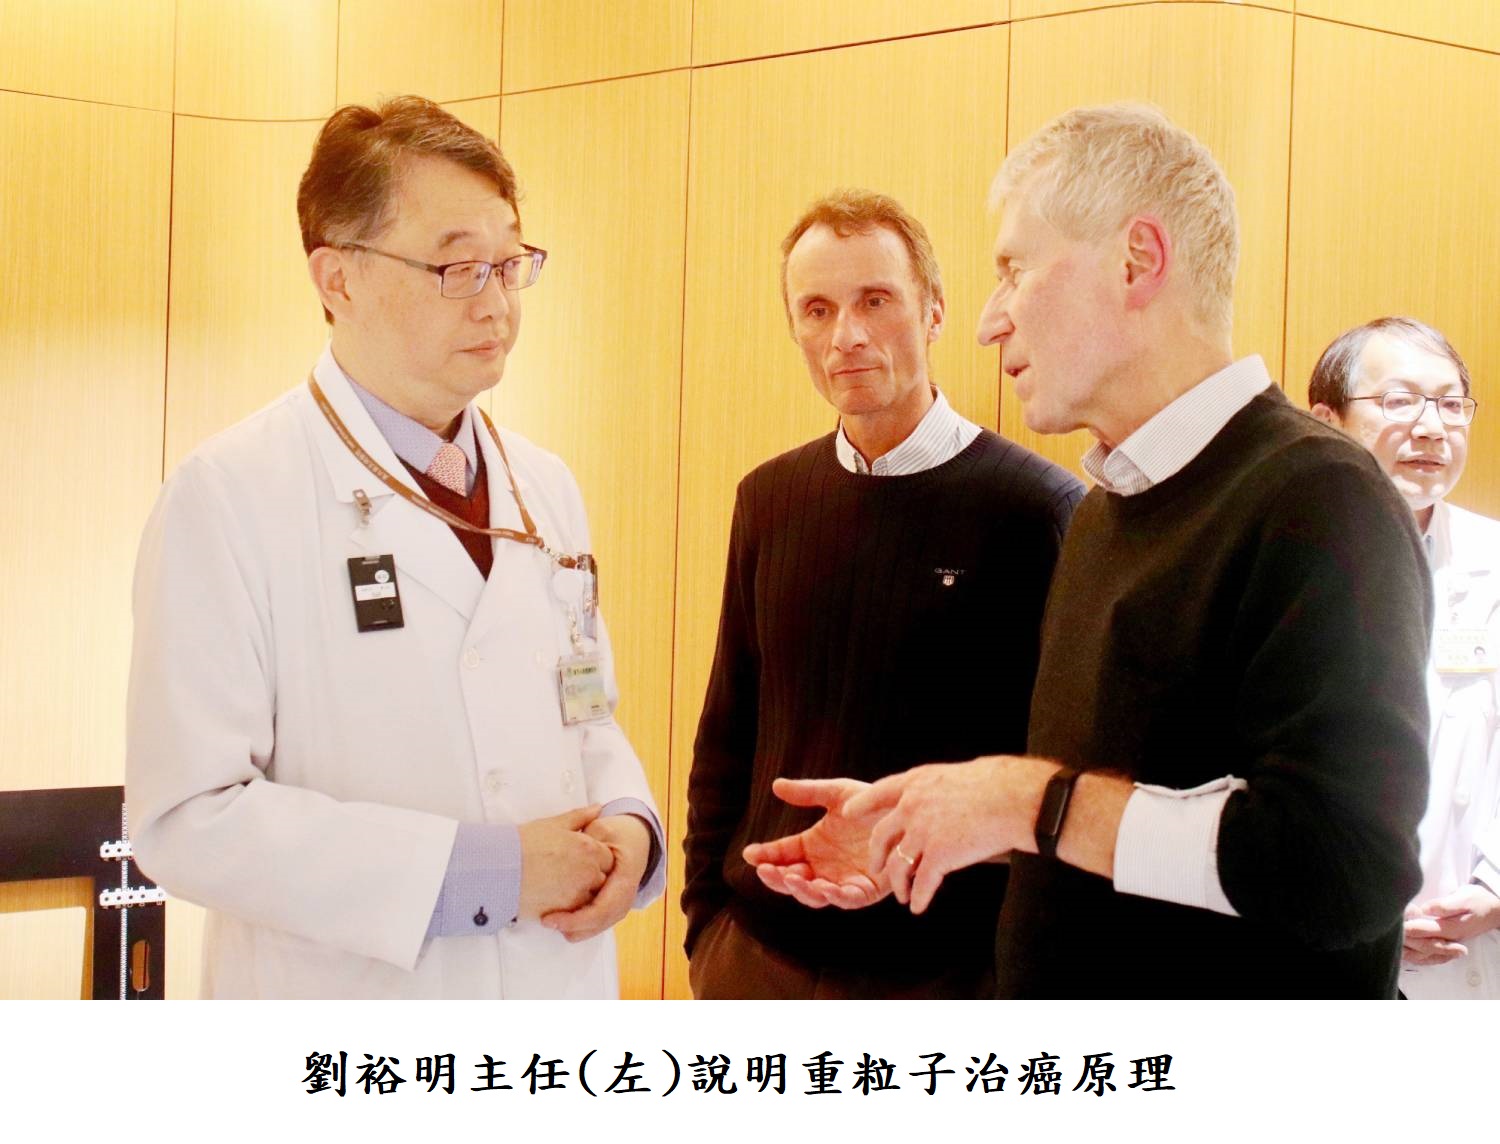 劉裕明主任(左)說明重粒子治癌原理